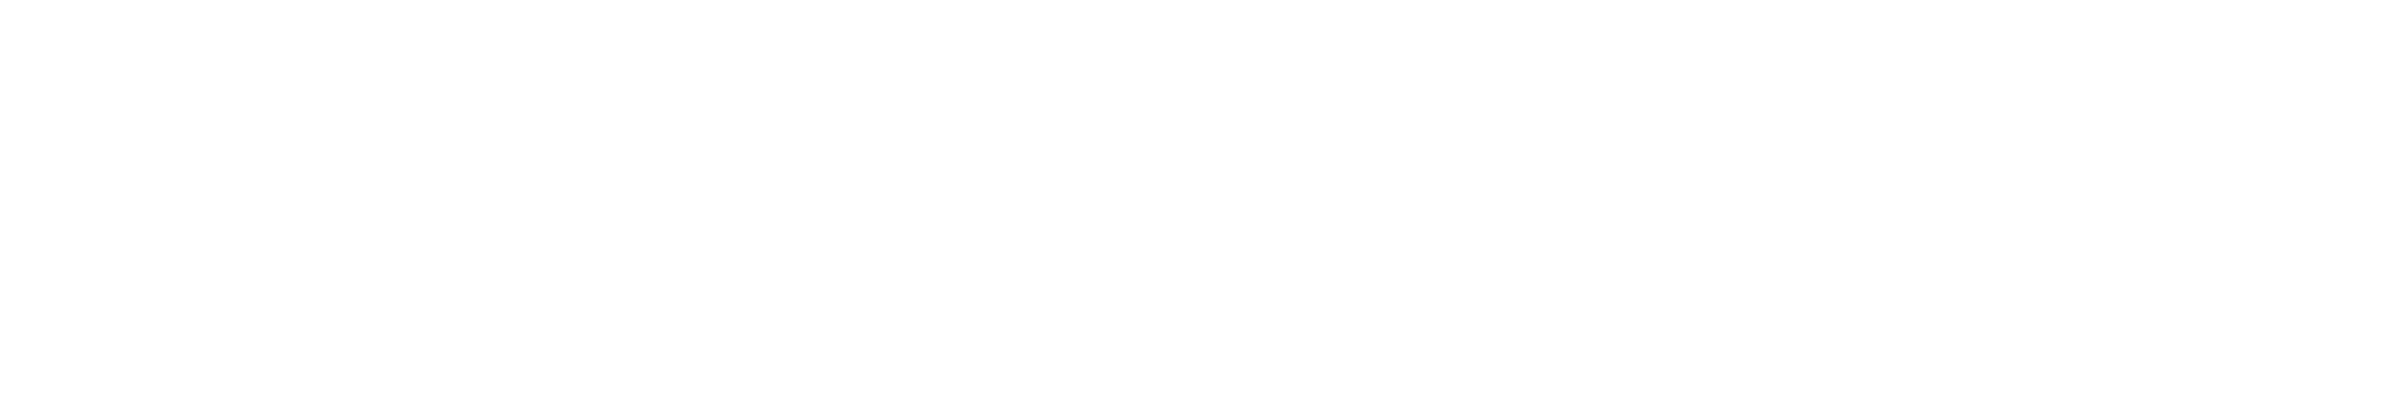 Heischneida text logo white